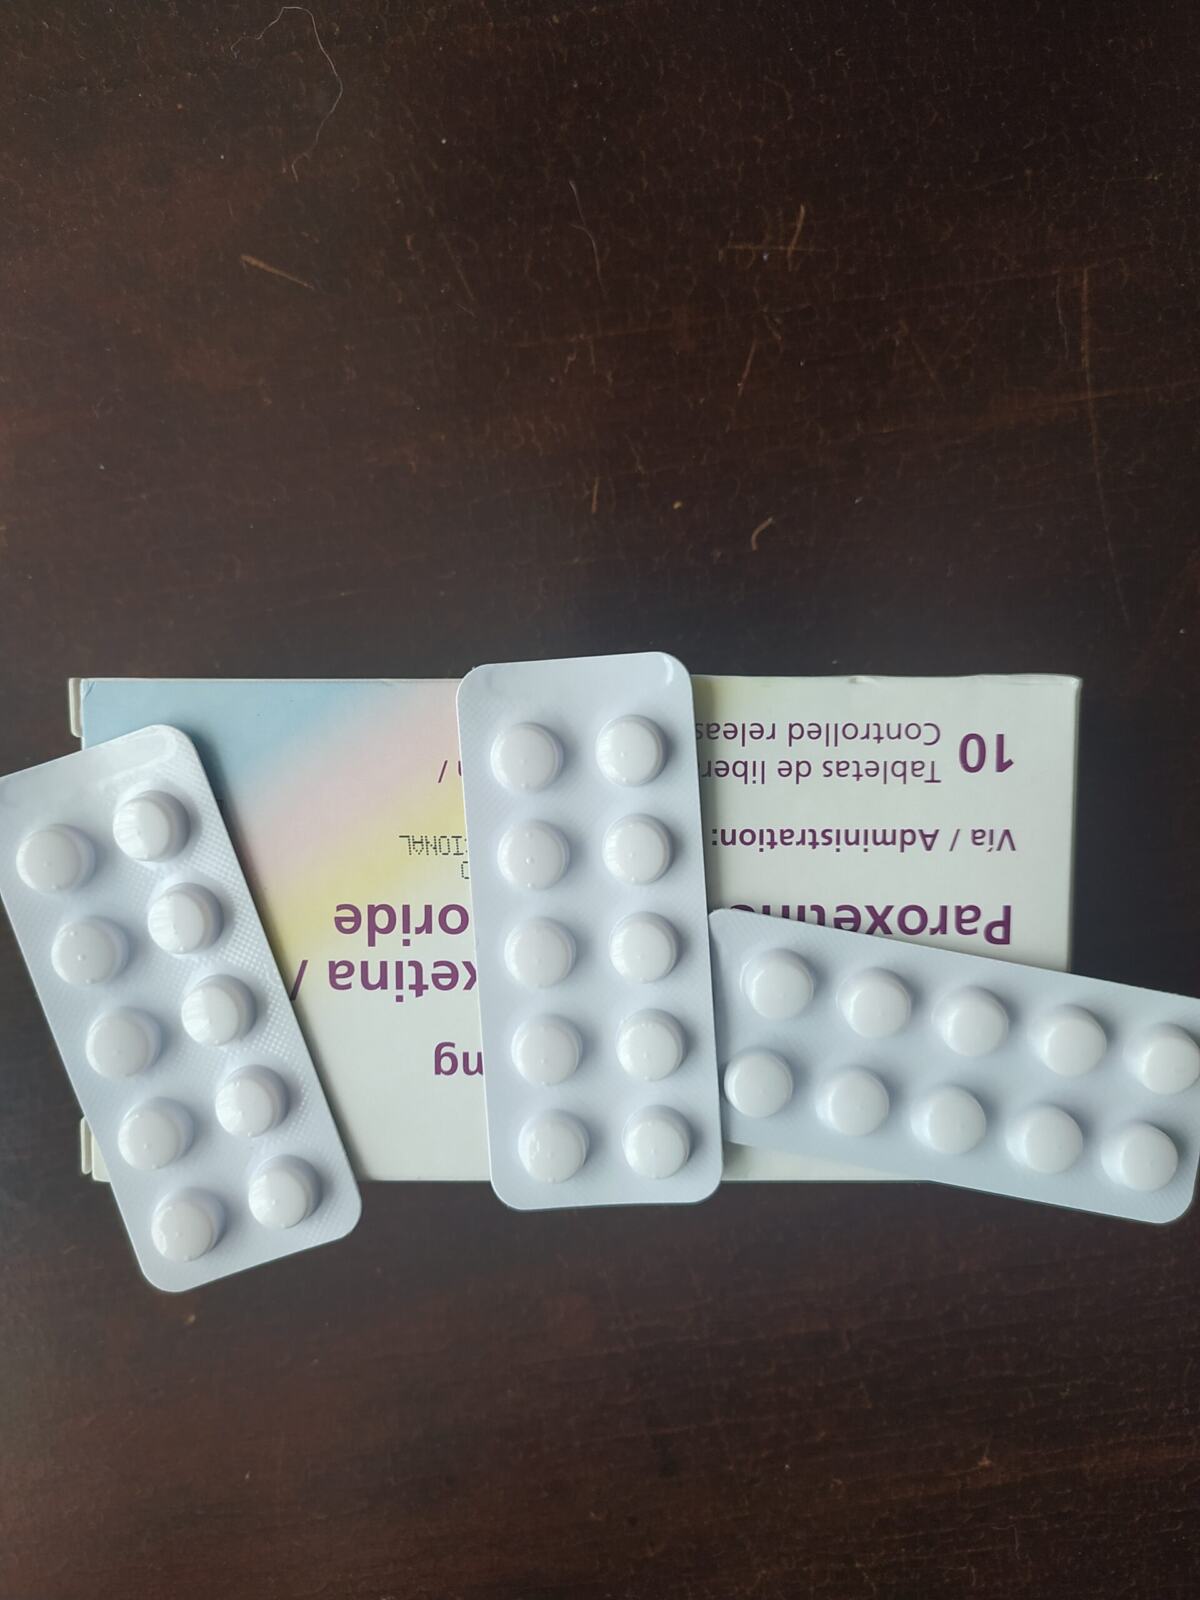 Kiwi 69xxx - Sobredosis de Trazodone? â‹† El Paciente Colombiano